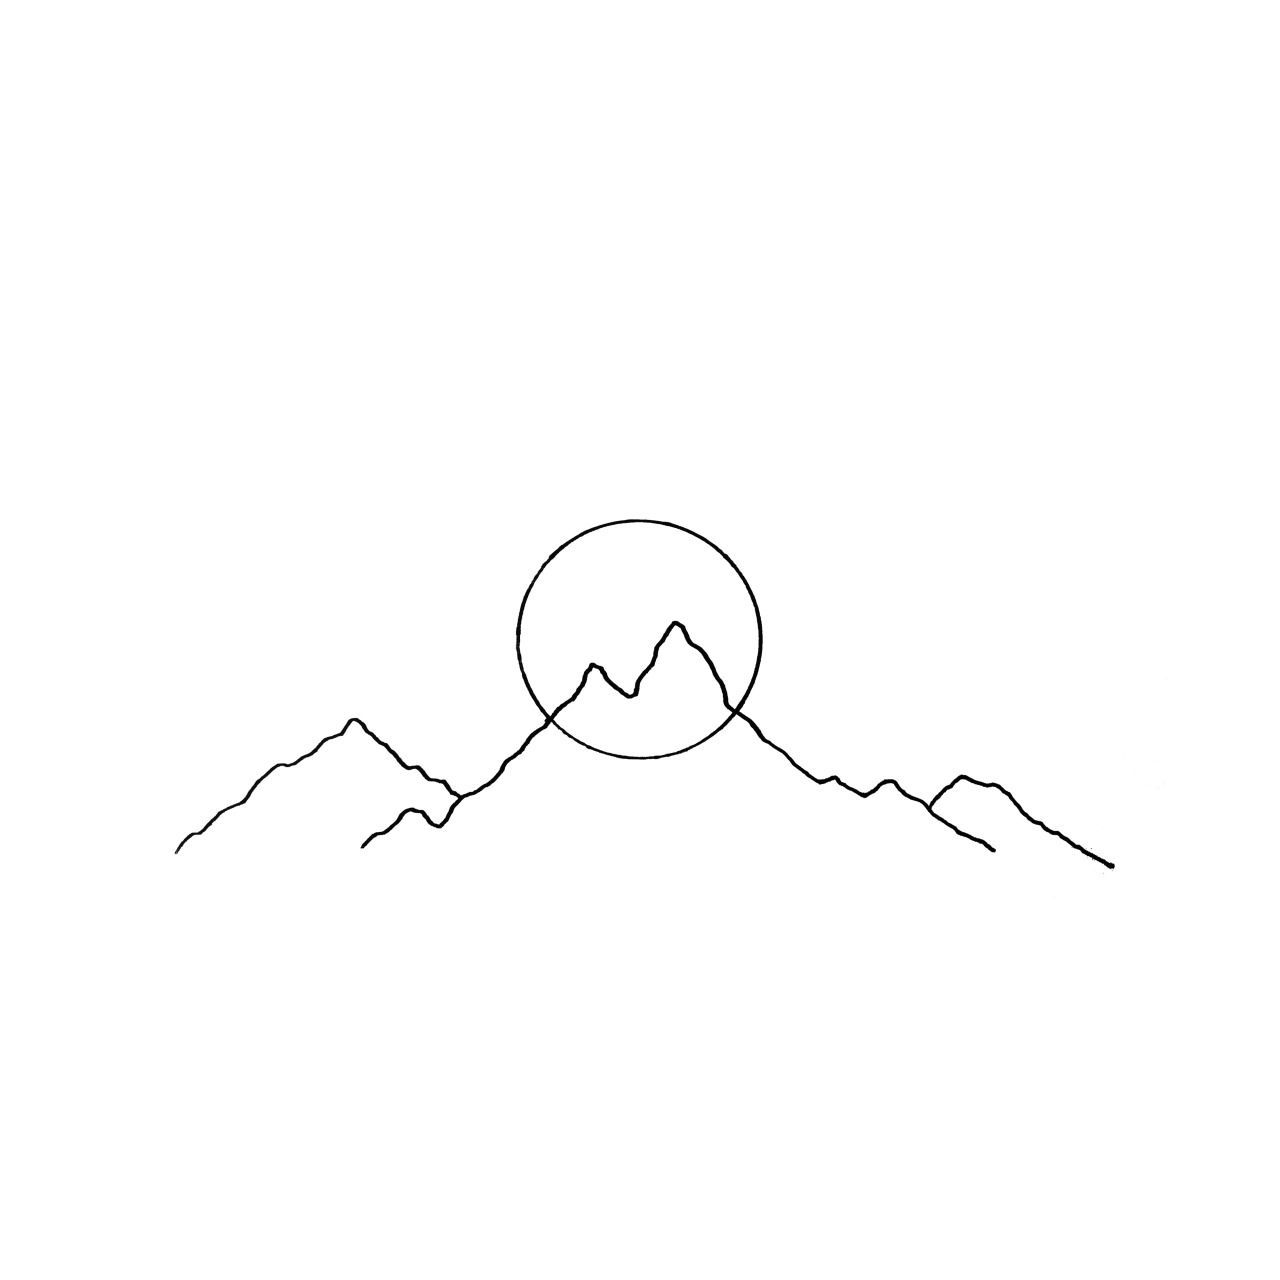 montagne et soleil (ou lune) dessinés de façon graphique, juste un trait noir